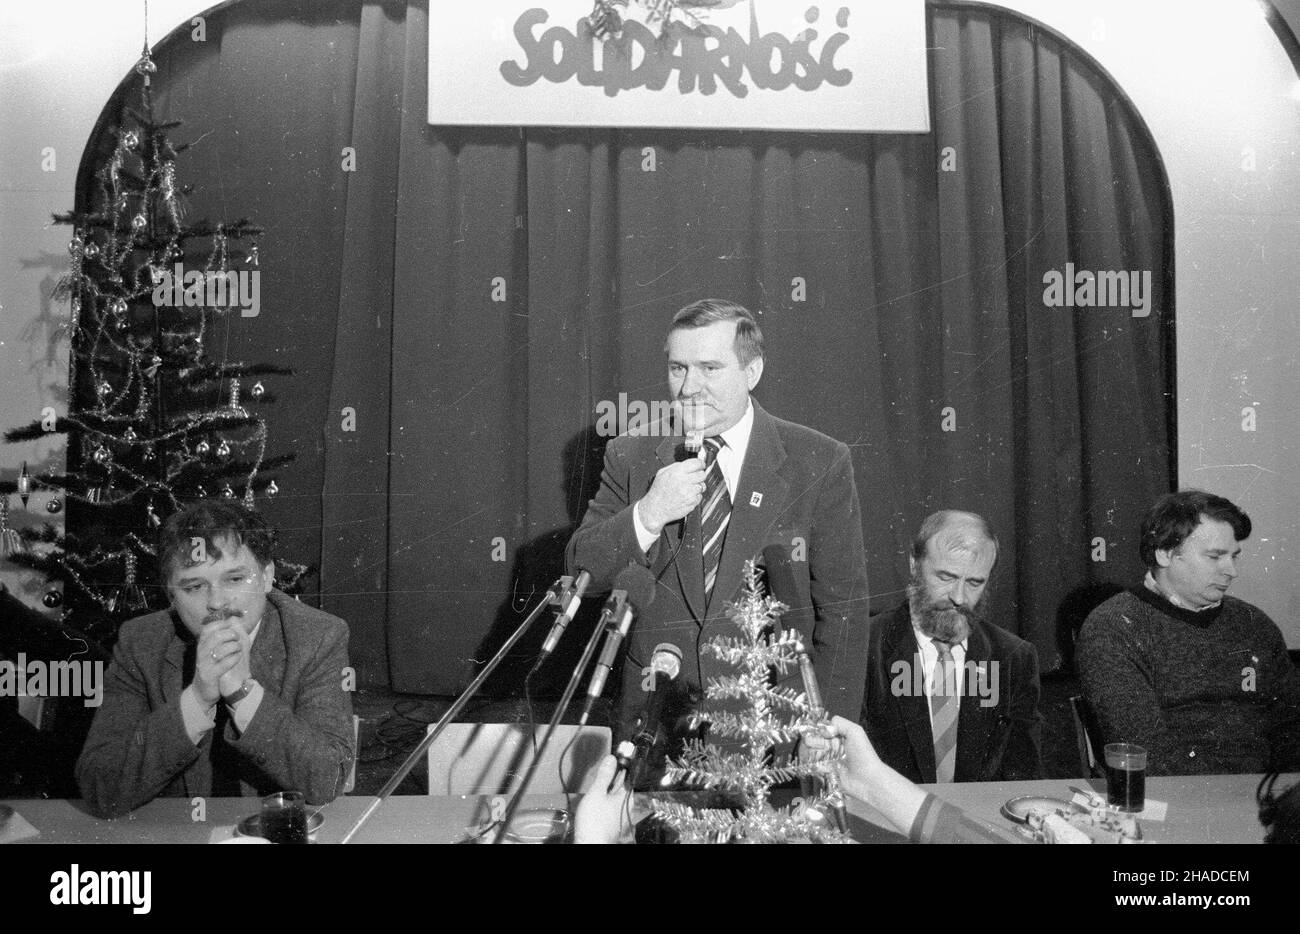 Gdañsk, 20.12.1990. Lech Wa³êsa (C) uczestniczy³ w spotkaniu op³atkowym ze zwi¹zkowcami z NSZZ Solidarnoœæ. Nz.: Lech Kaczyñski (L), Bogdan Borusewicz (P), Stefan Jurczak (2P), przemawia Lech Wa³êsa (C). (ptr) PAP/CAF/Stefan Kraszewski     Gdansk, 20.12.1990. Lech Walesa participated in the Christmas meeting with the Solidarity union members in Gdansk. Pictured: Lech Kaczynski (L), Bogdan Borusewicz (R), Stefan Jurczak (2R), Lech Walesa (C) delivers a speech. (ptr)   PAP/CAF/Stefan Kraszewski Stock Photo